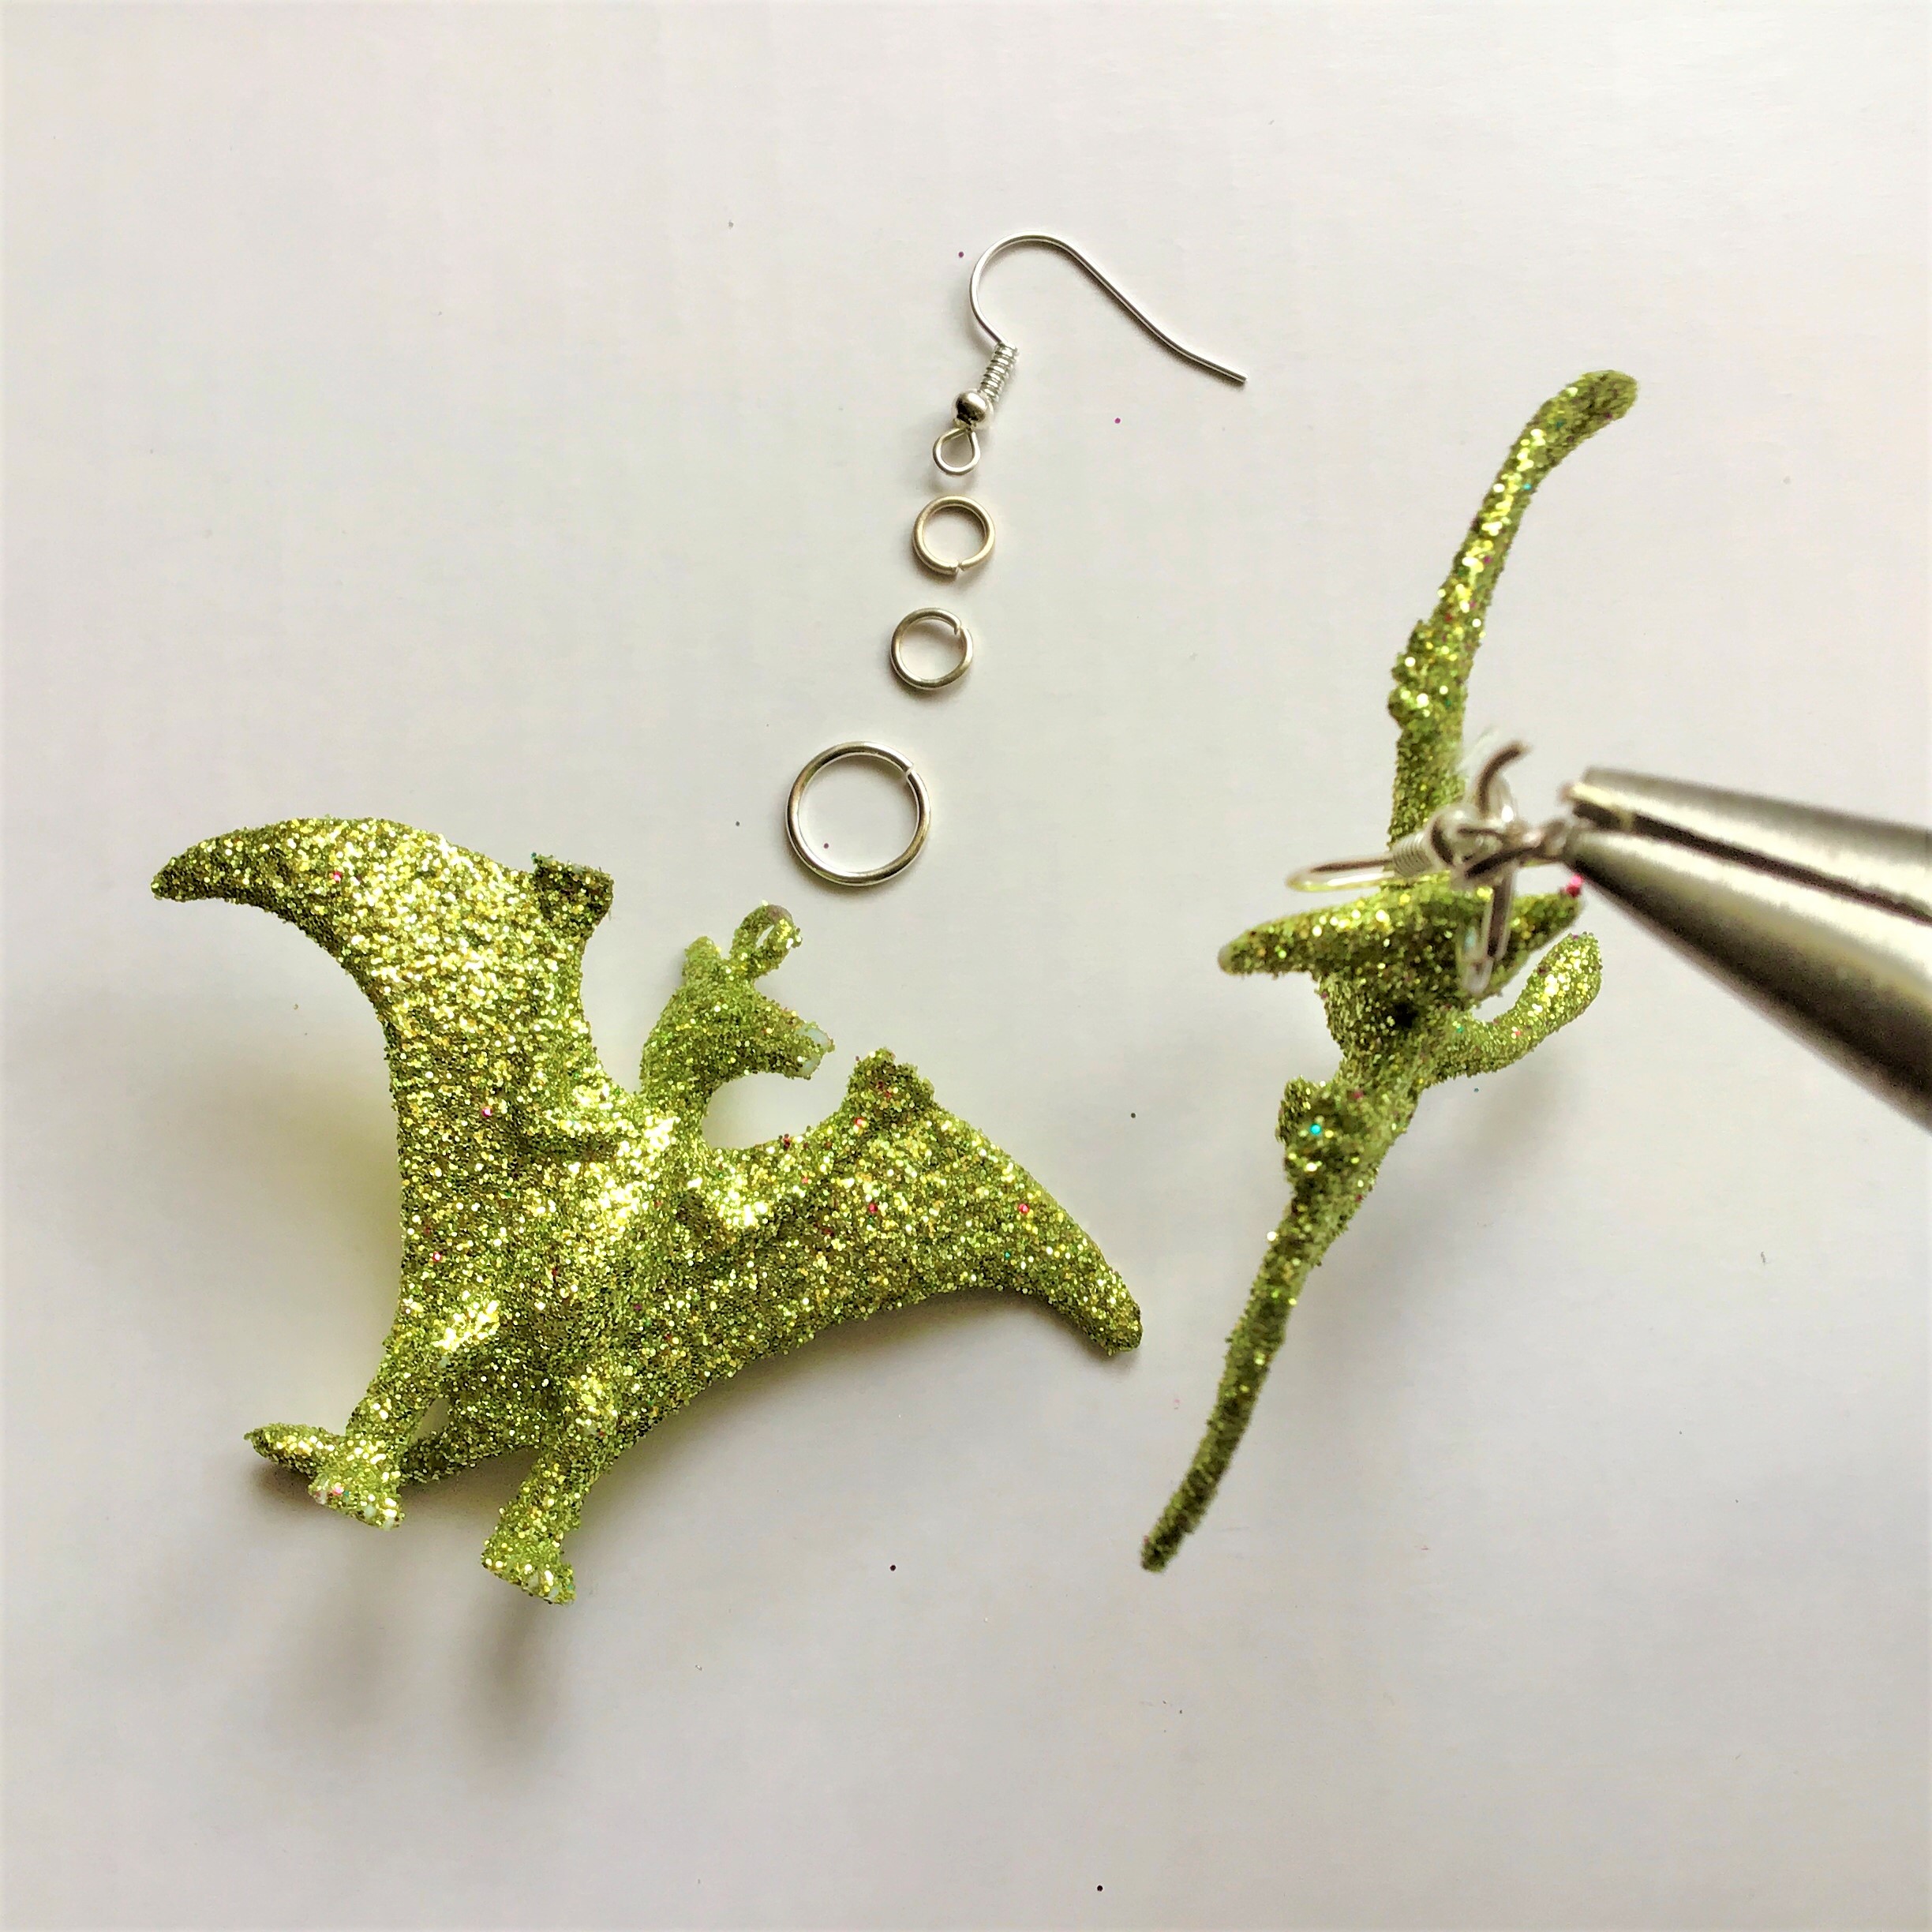 Glitter Dinosaur Earrings DIY - Chandelier Pterodactyl